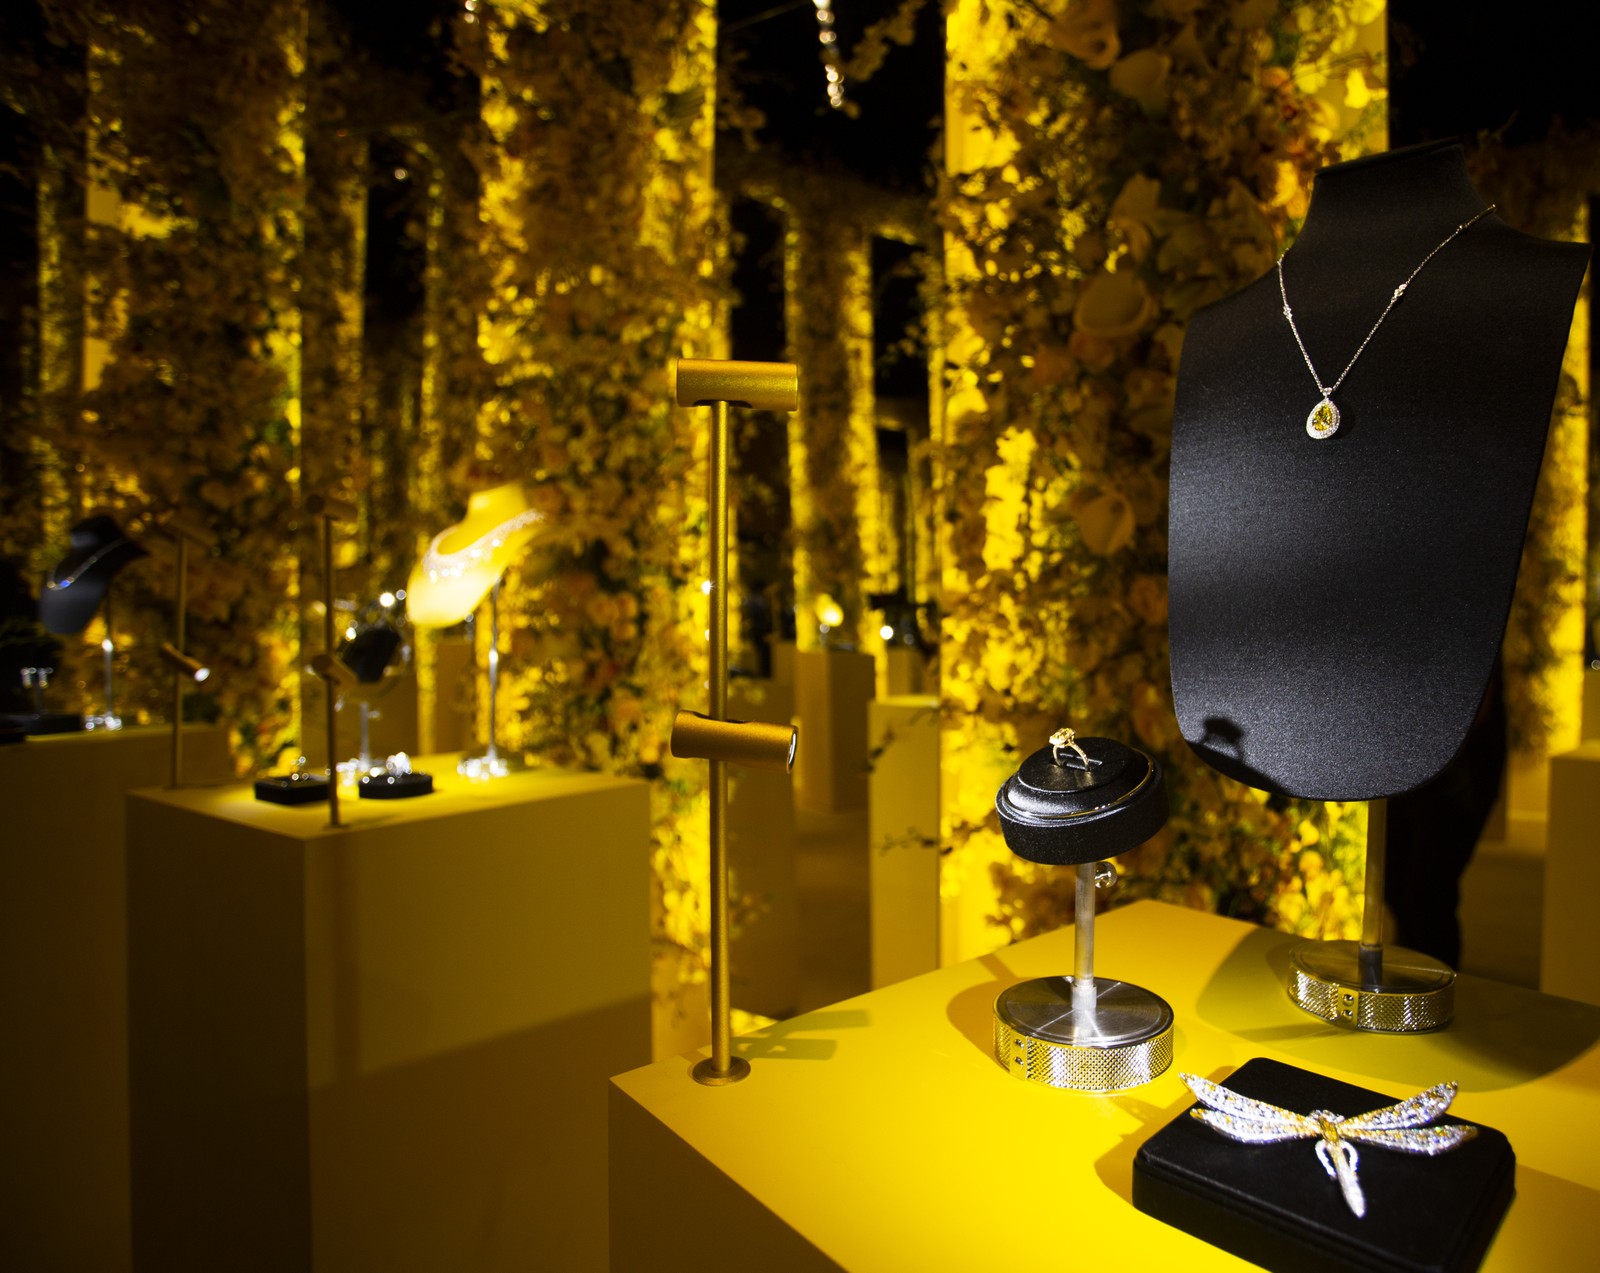 Juntamente com o Diamante Tiffany, uma seleção de peças de alta jolheria da marca também estava na exposição fechada a convidados e clientes. — Foto: Maria Isabel Oliveira